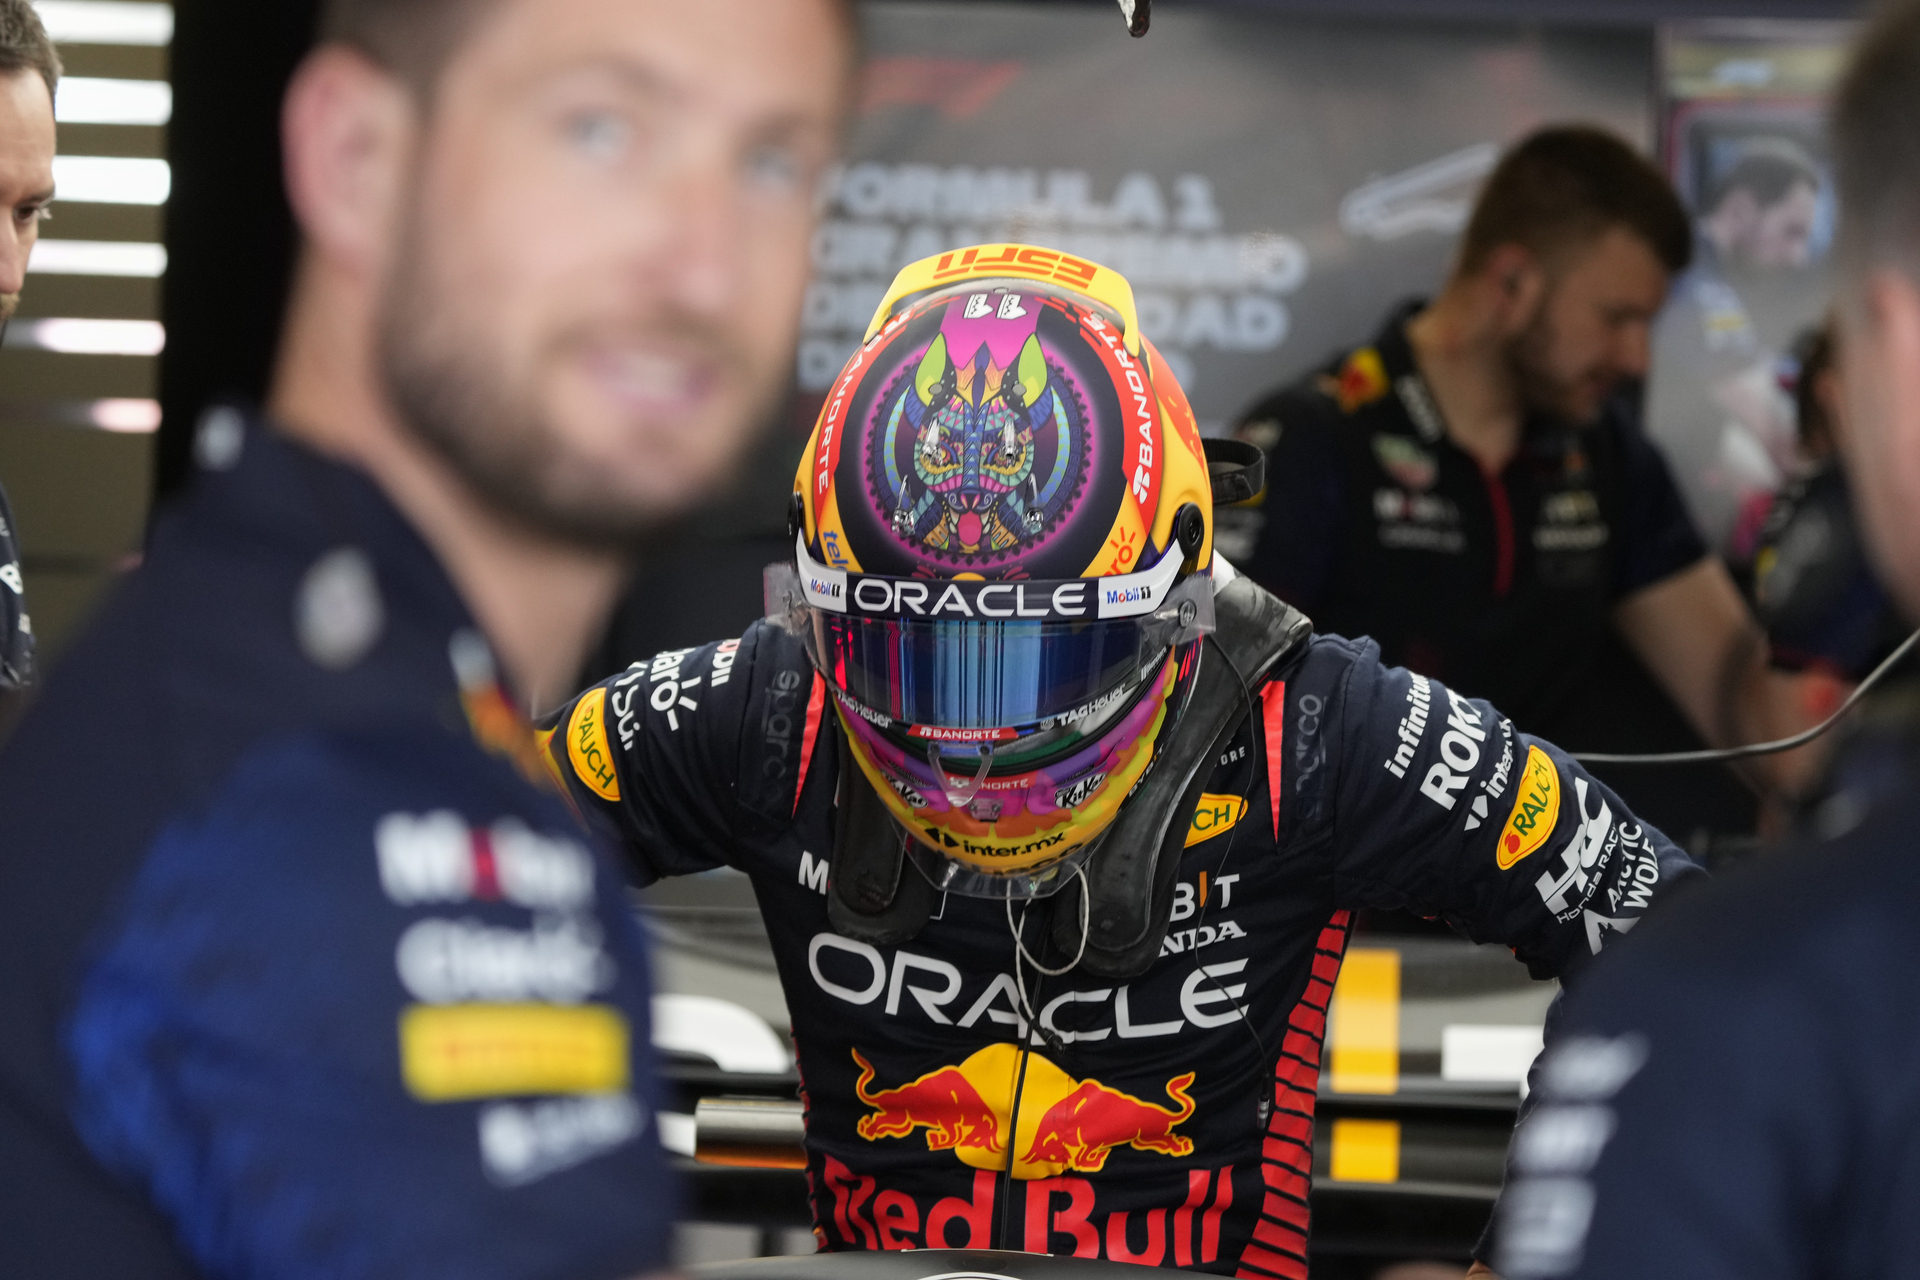 Max Verstappen lidera primera práctica en el Gran Premio de México; Checo Pérez termina tercero